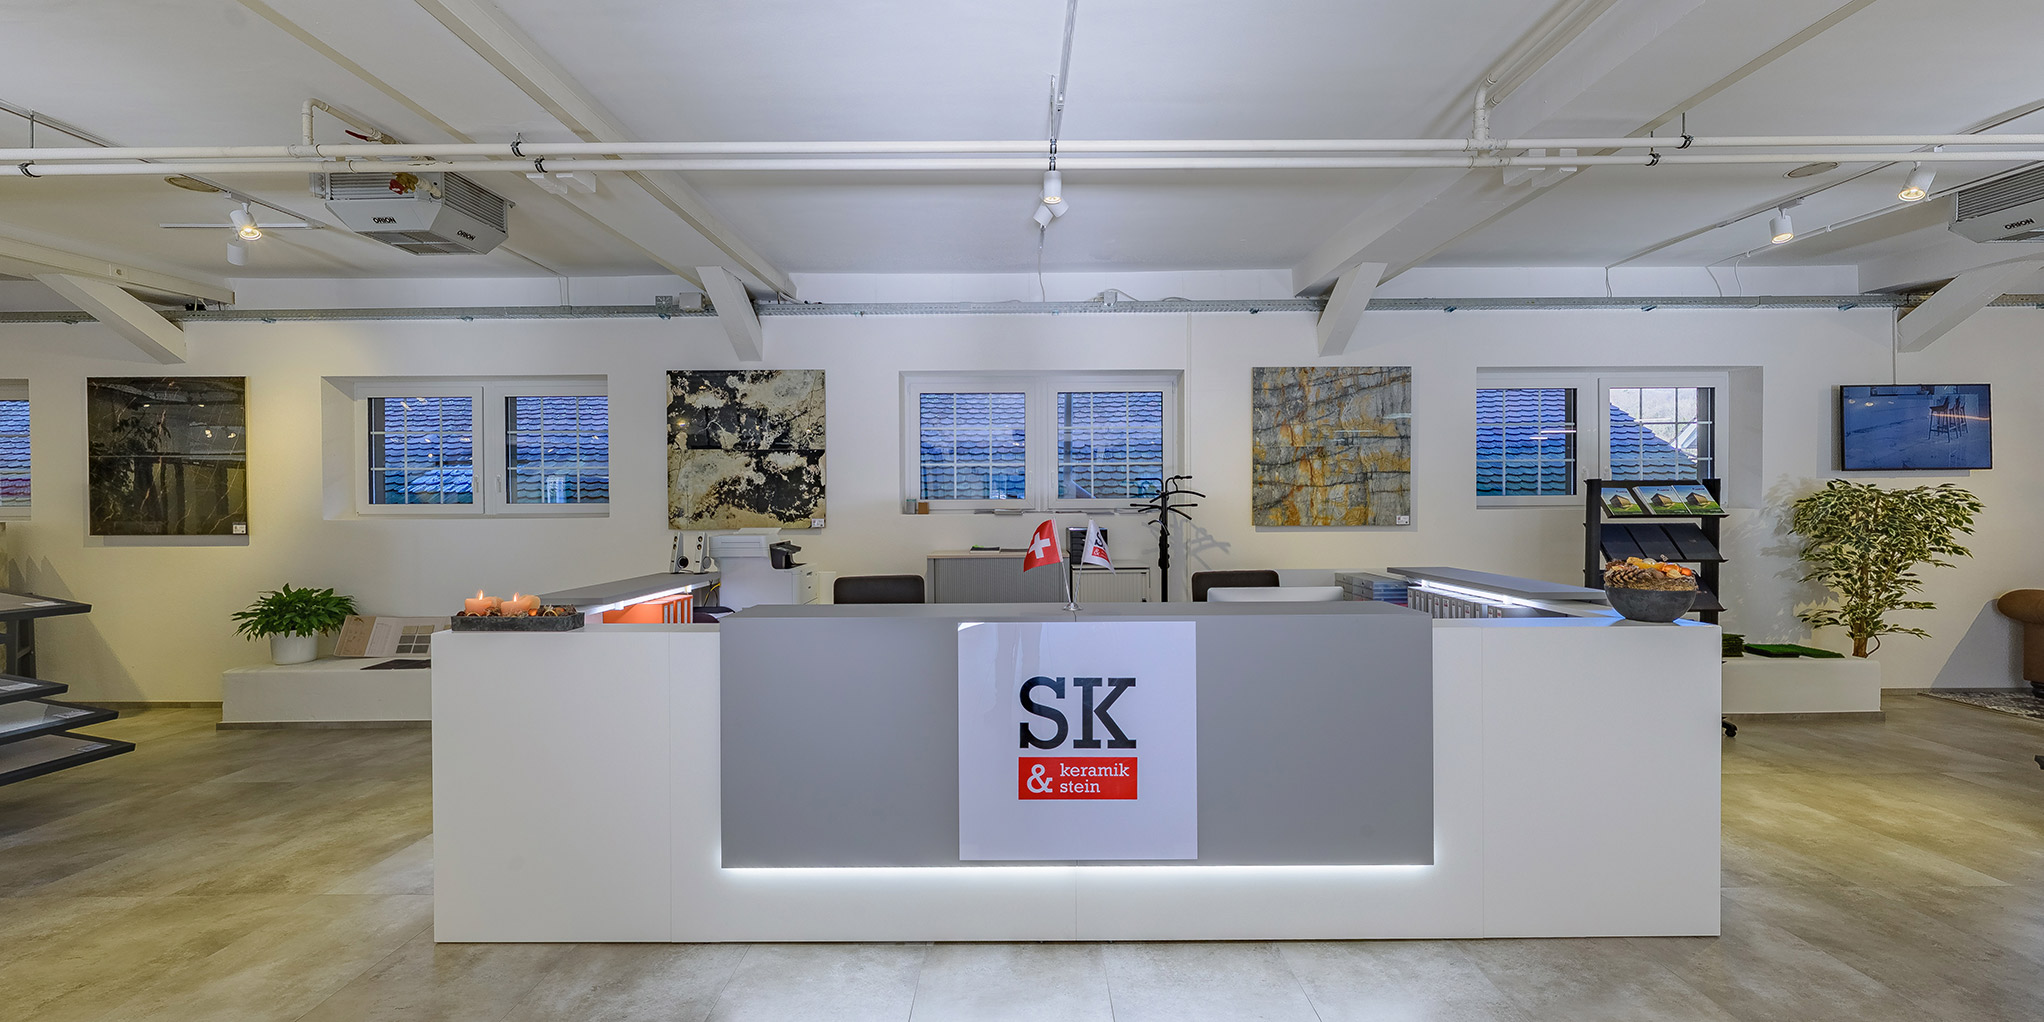 SK Keramik & Stein GmbH